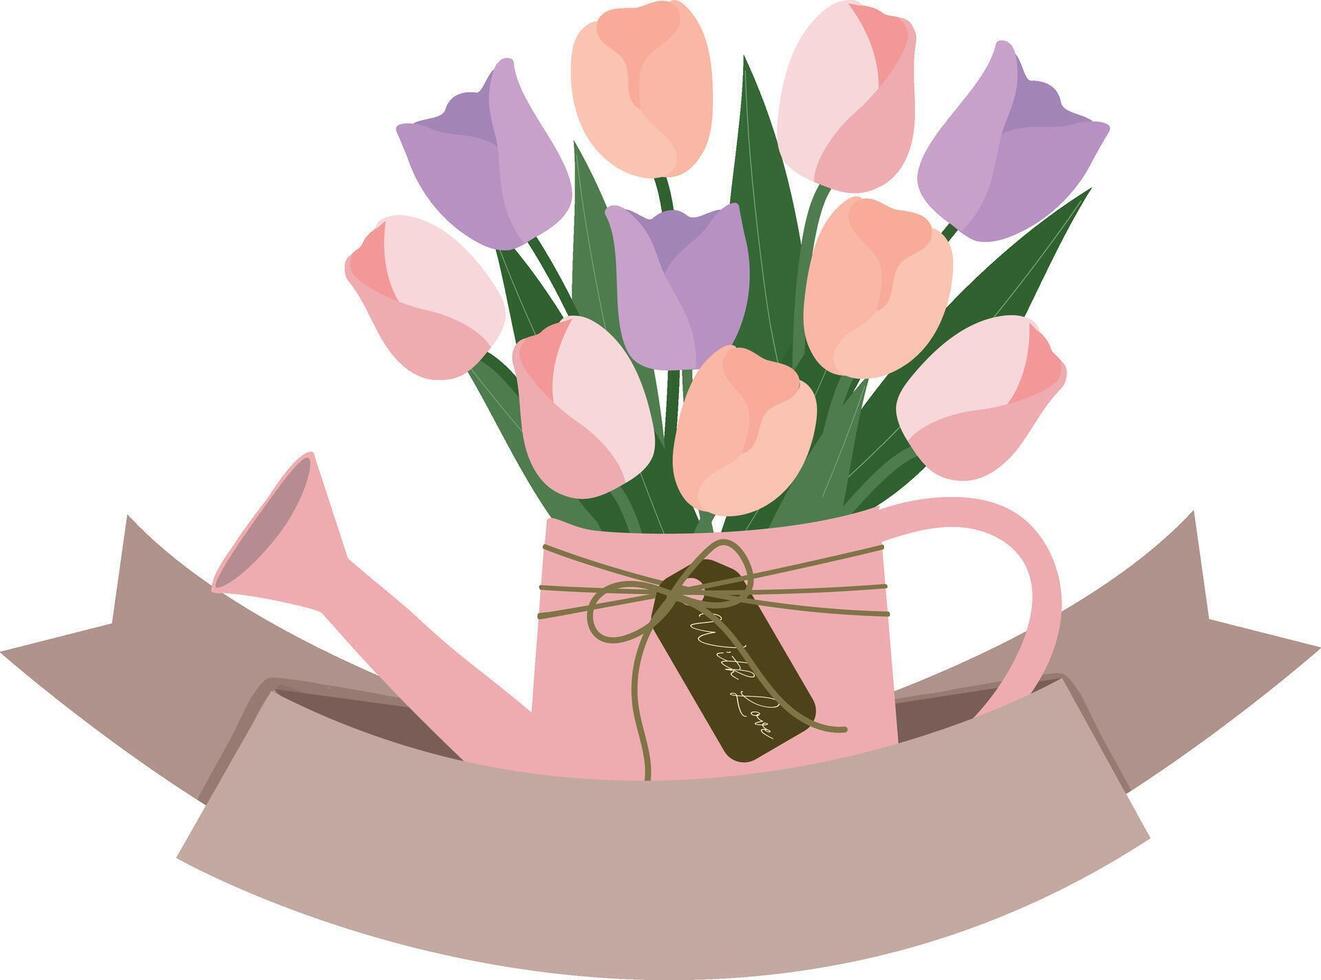 Tulpe Blumen Strauß im Bewässerung können mit Band Banner Clip Art Hand gezeichnet Illustration zum schmücken Einladung Gruß Geburtstag Party Feier Hochzeit Karte Poster Banner Hintergrund vektor